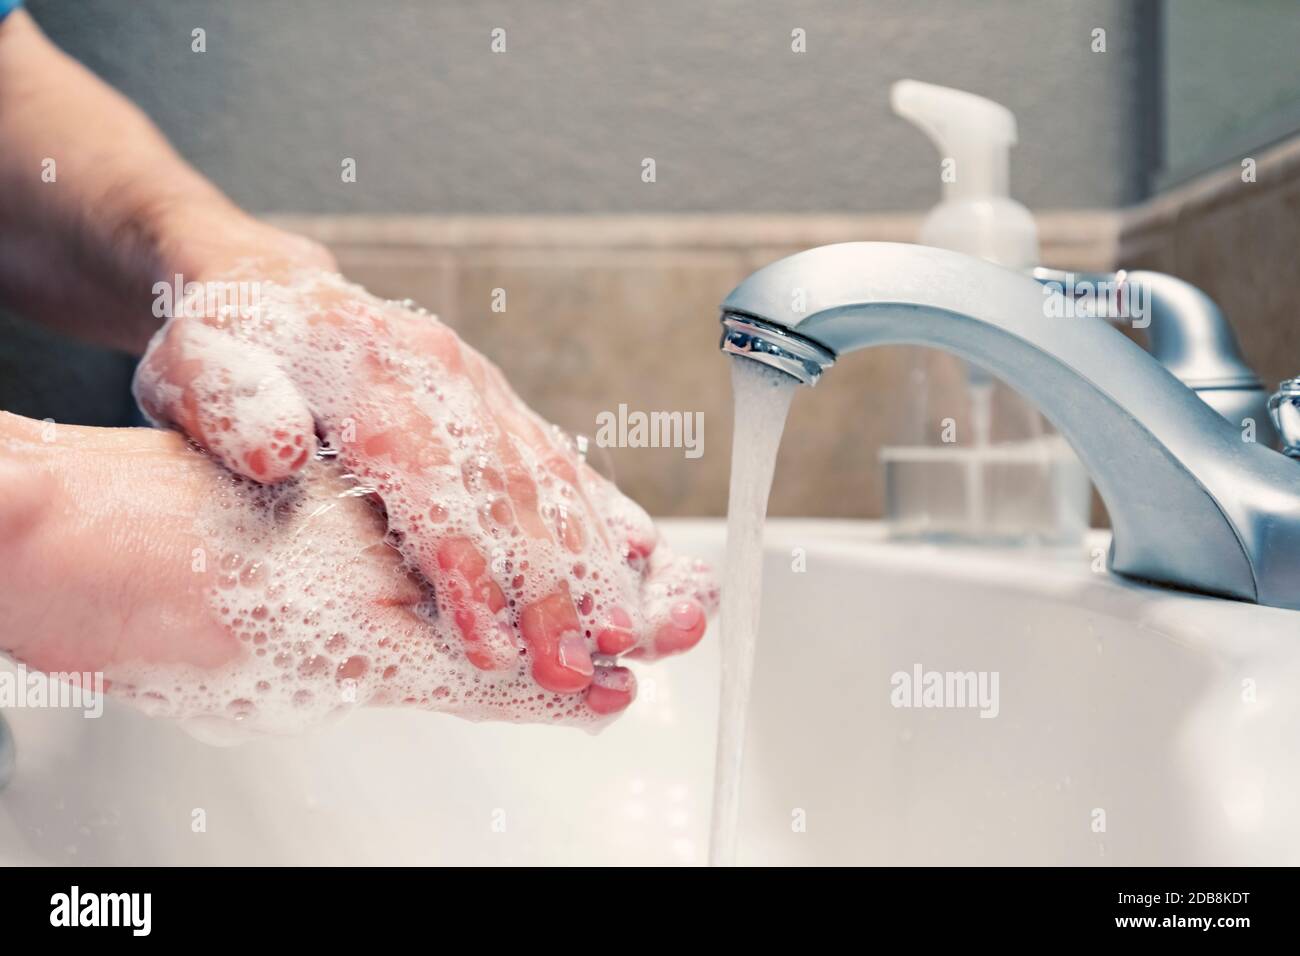 Lavando le mani con sapone e acqua nel lavello del bagno, protezione contro i virus influenzali del coronavirus covid-19, igiene per rimanere in buona salute Foto Stock